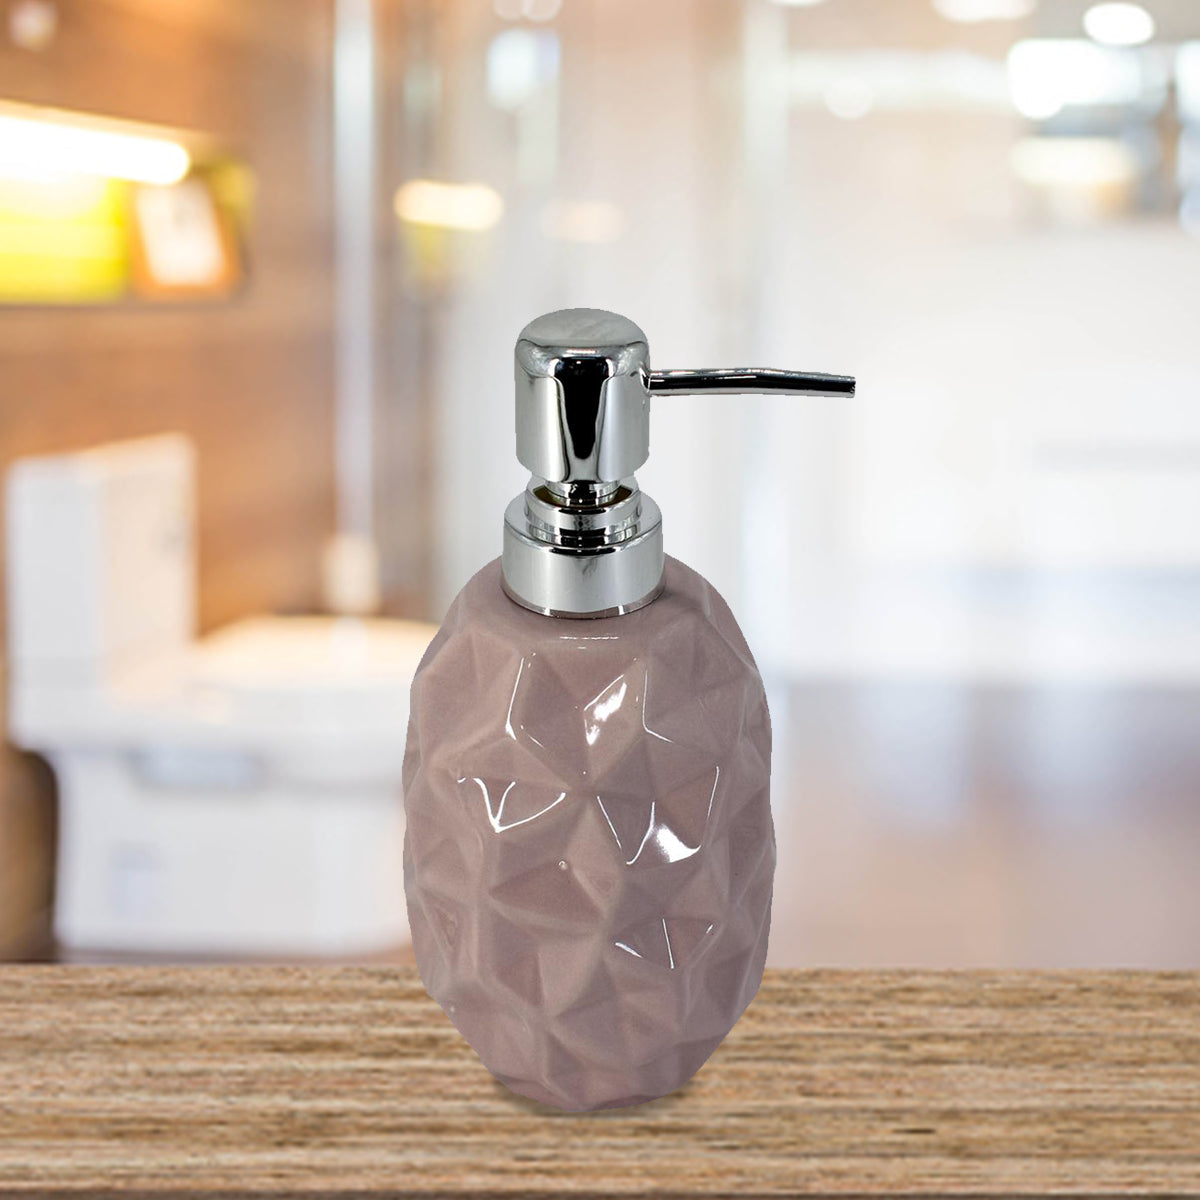 Kookee Ceramic Soap Dispenser for Bathroom handwash, refillable pump bottle for Kitchen hand wash basin, Set of 1, Brown (7622)